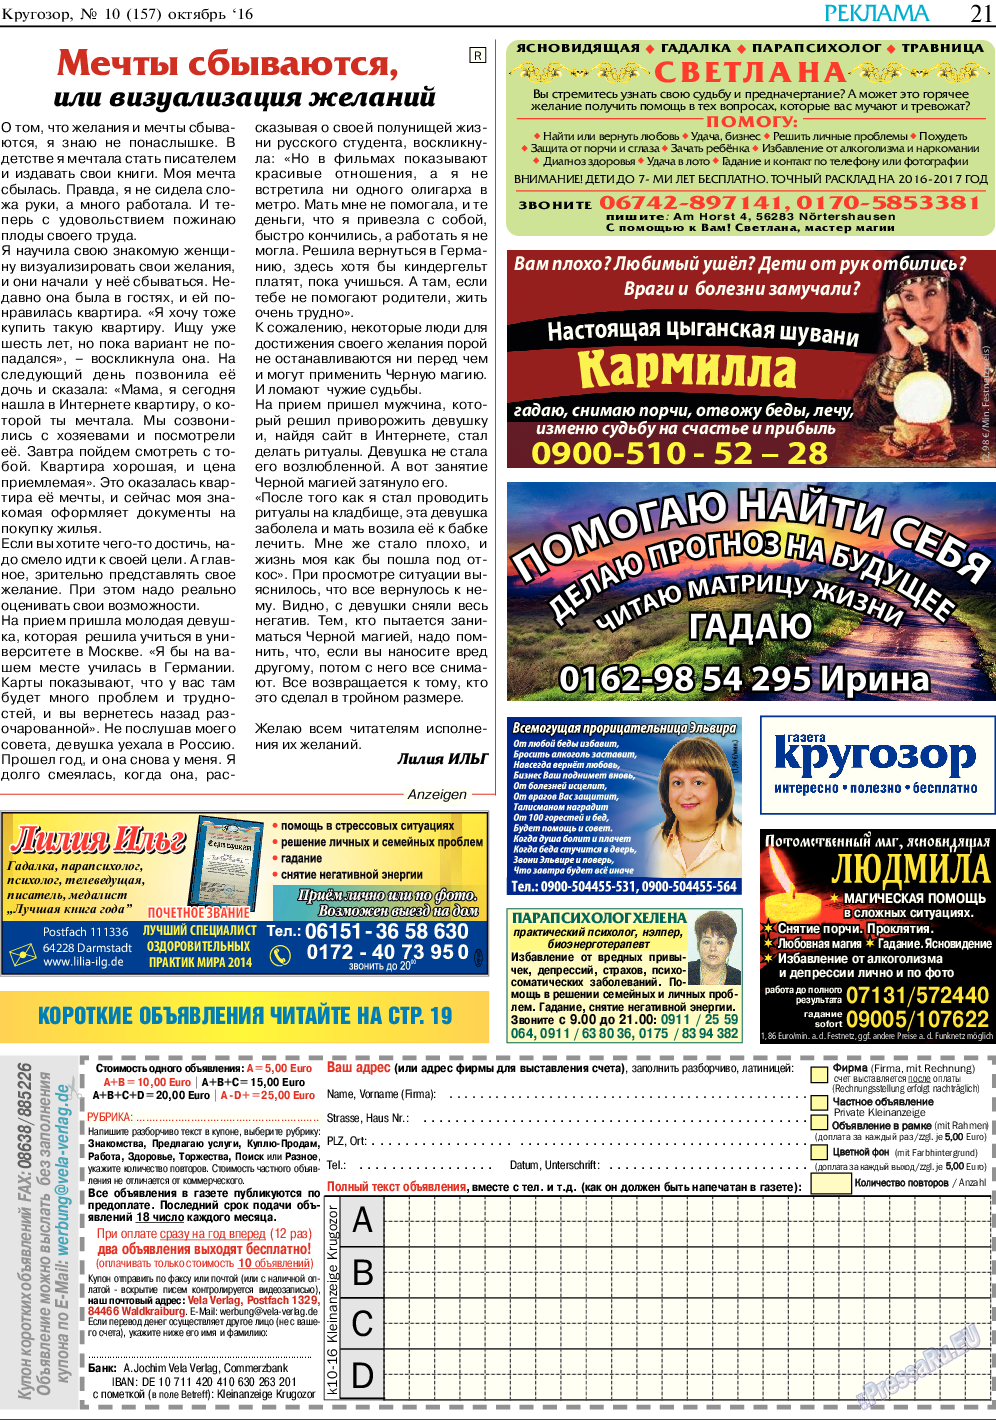 Кругозор, газета. 2016 №10 стр.21